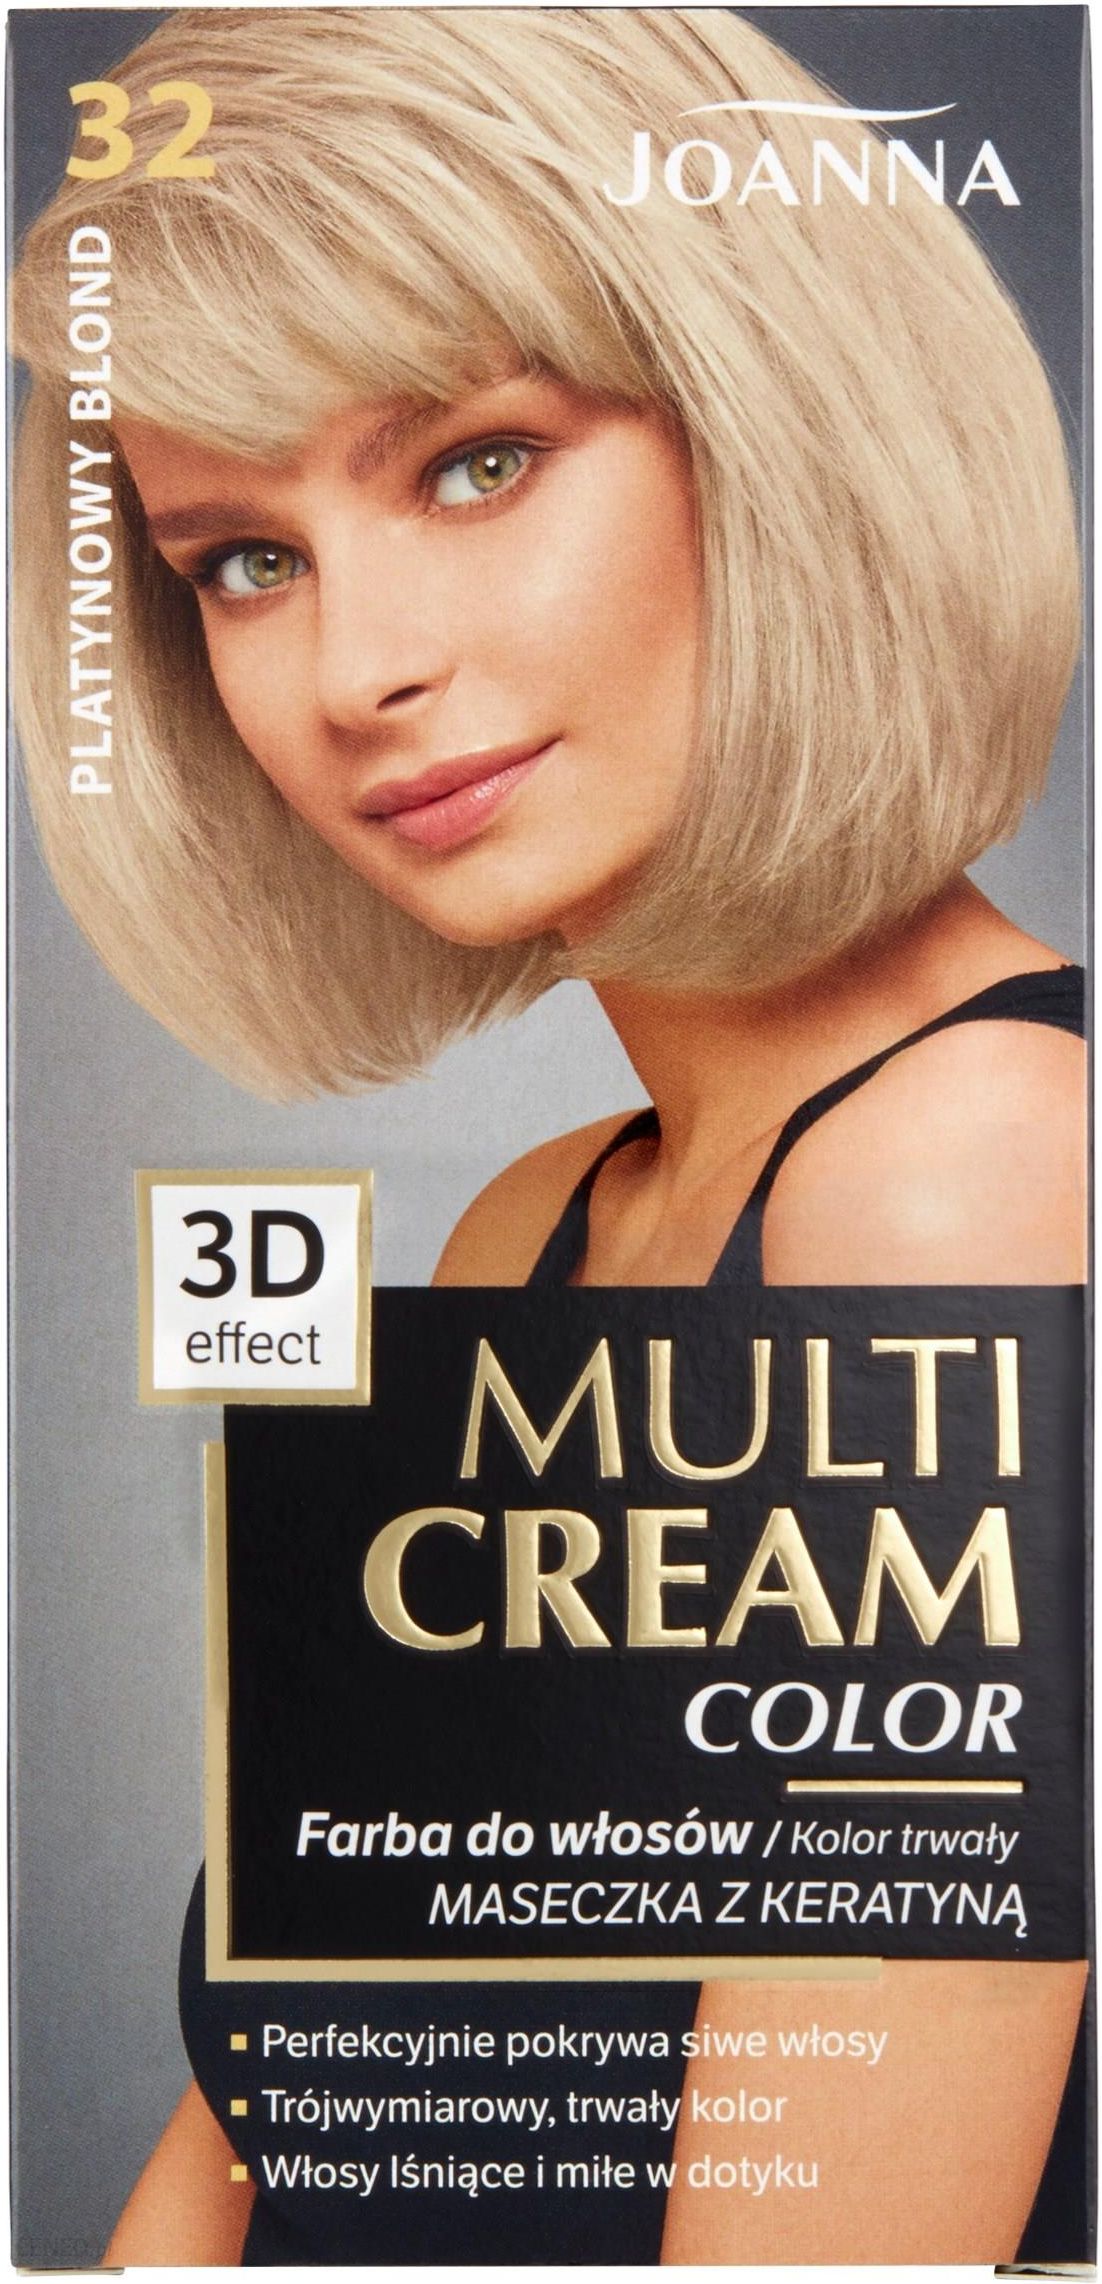 Joanna Multi Cream Color Farba do włosów 32 Platynowy Blond